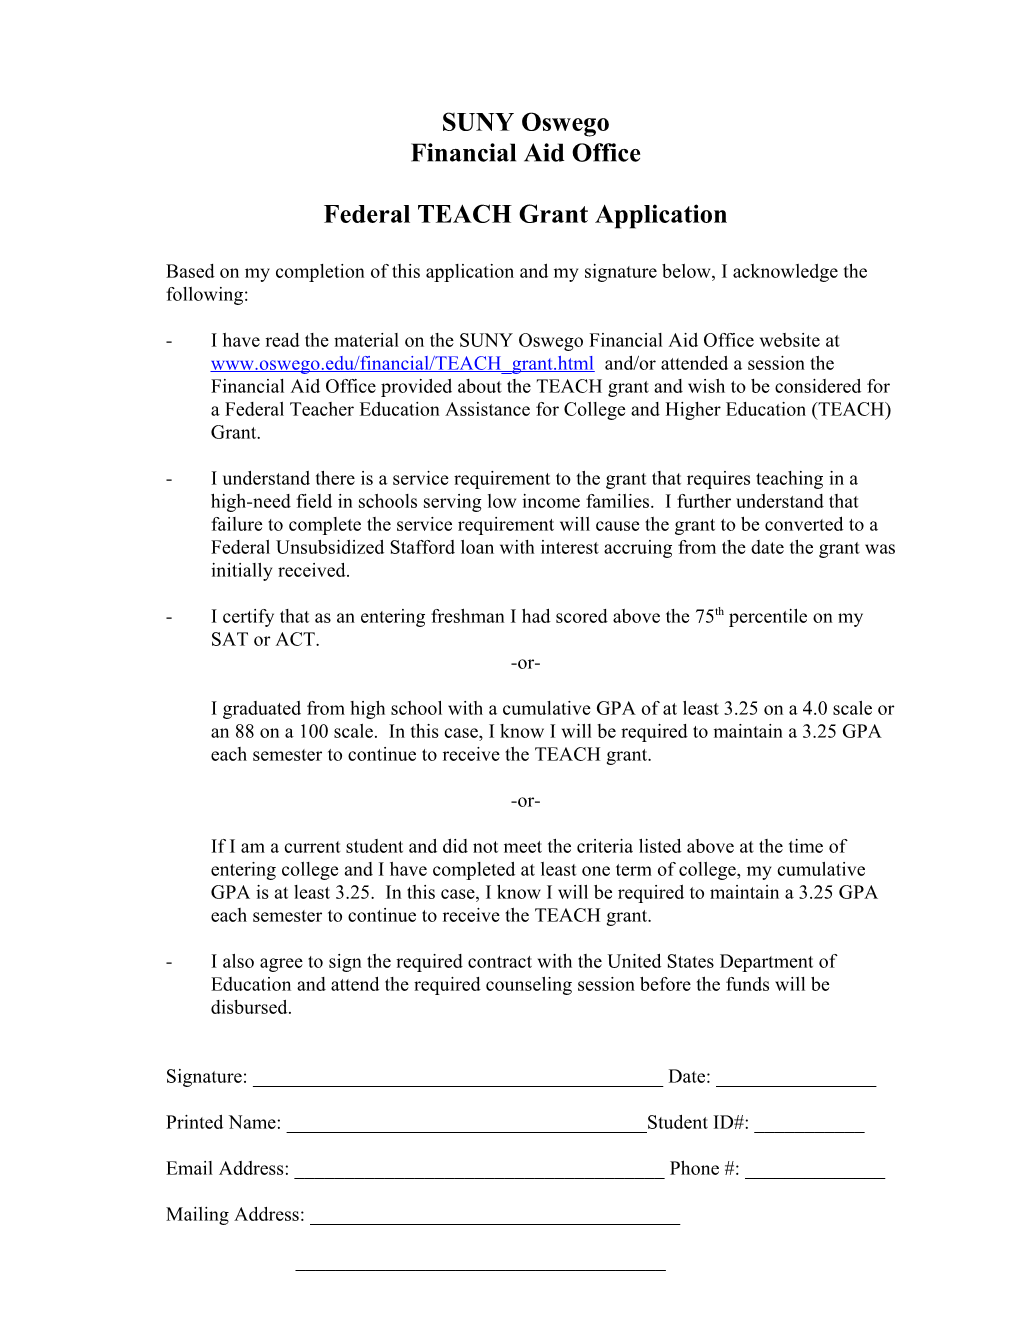 Federal TEACH Grant Application